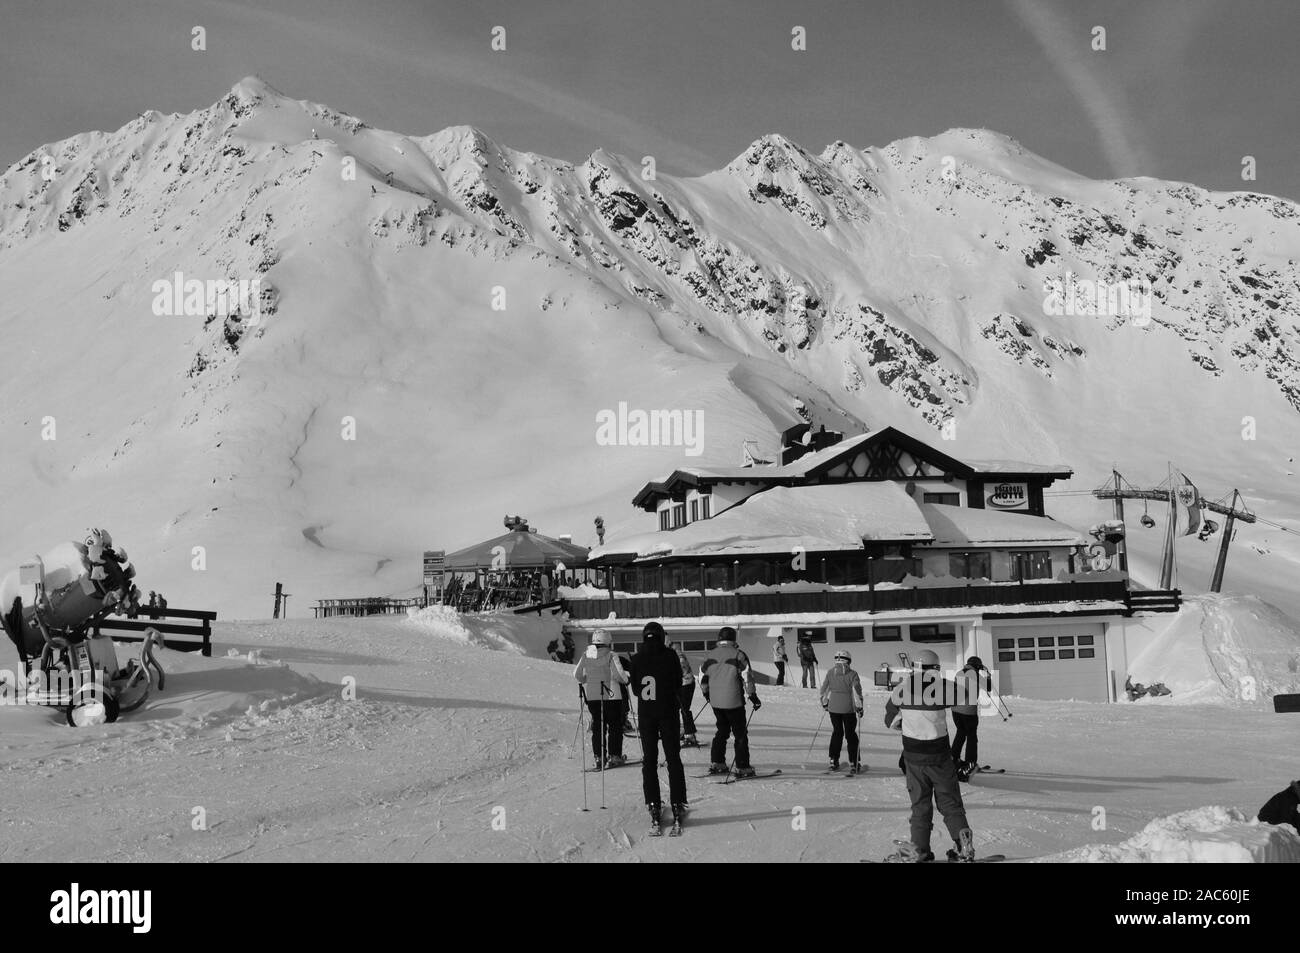 Sölden: montañas nevadas y glaciares para una perfecta sking y snowboarding en Sölden en los Alpes tiroleses. Foto de stock